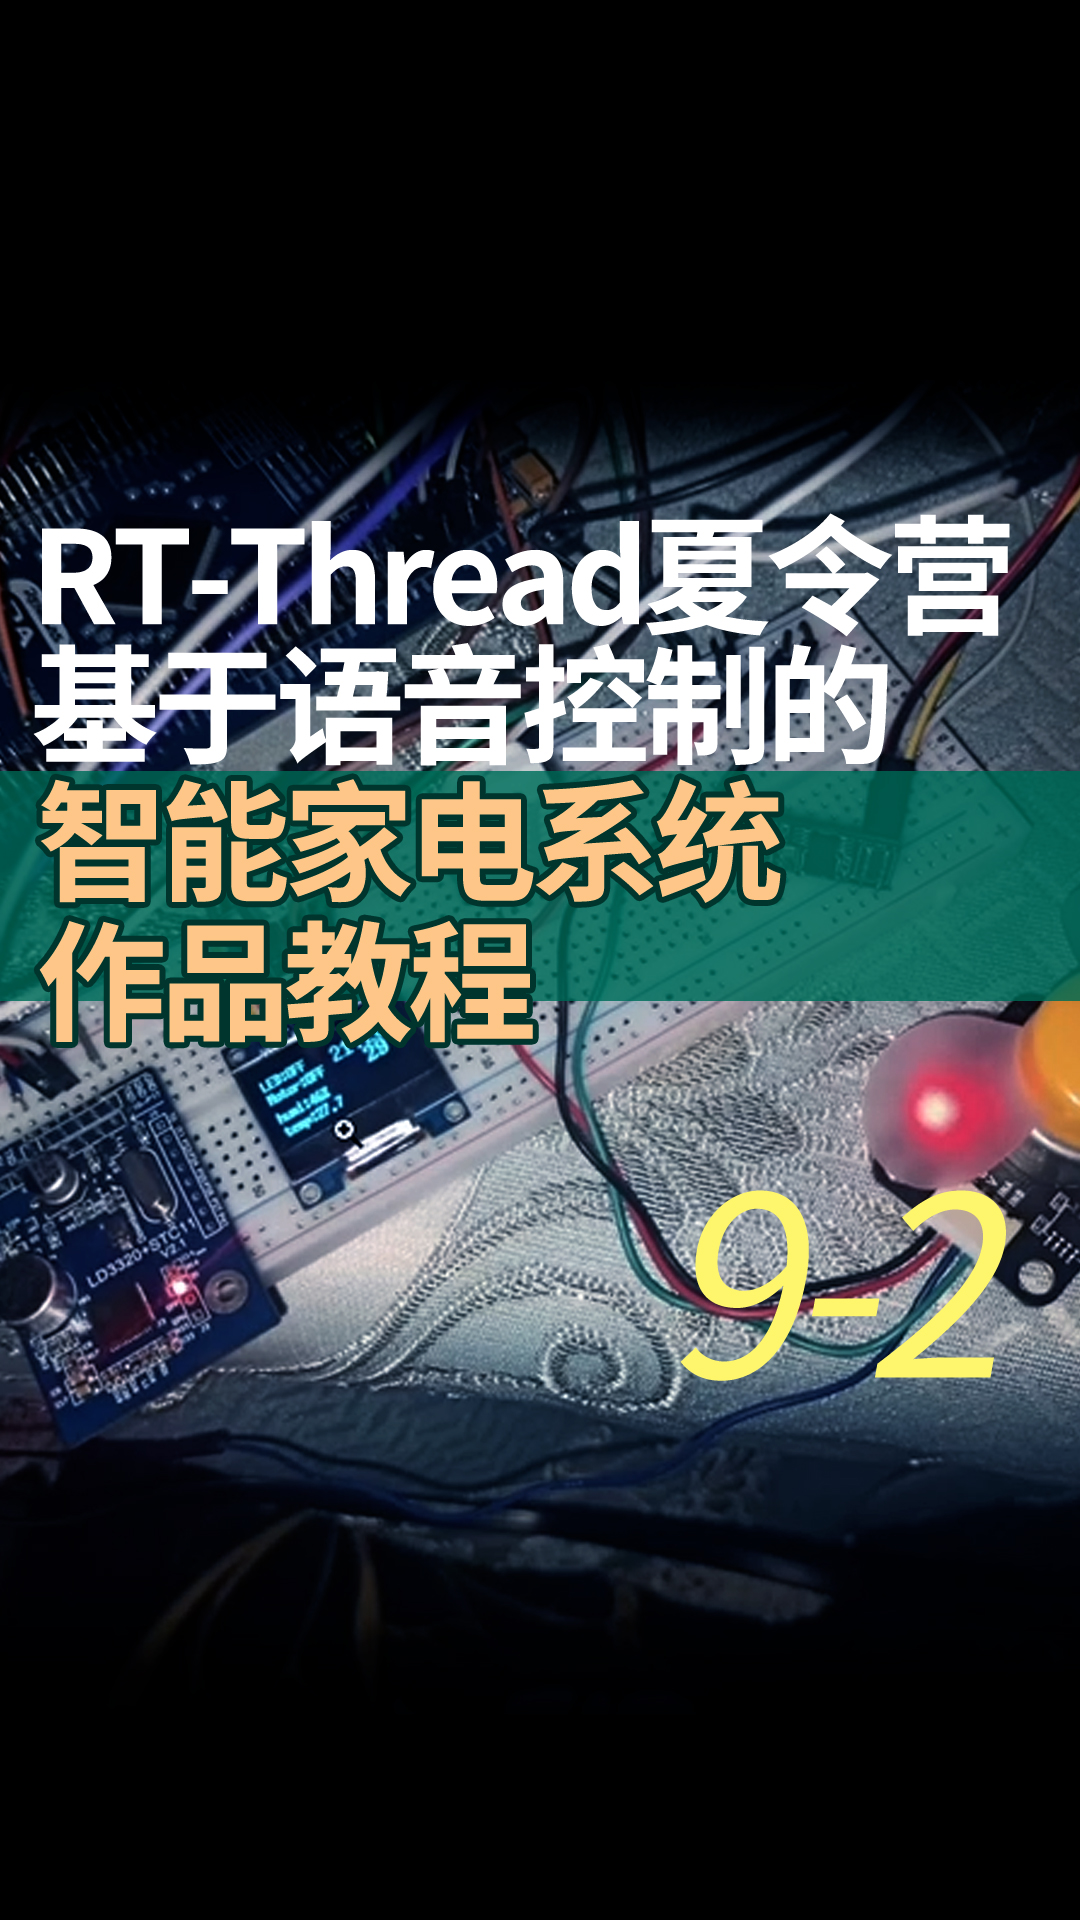 RT-Thread夏令营基于语音控制的智能家电系统作品教程9-2U8g2软件包的使用